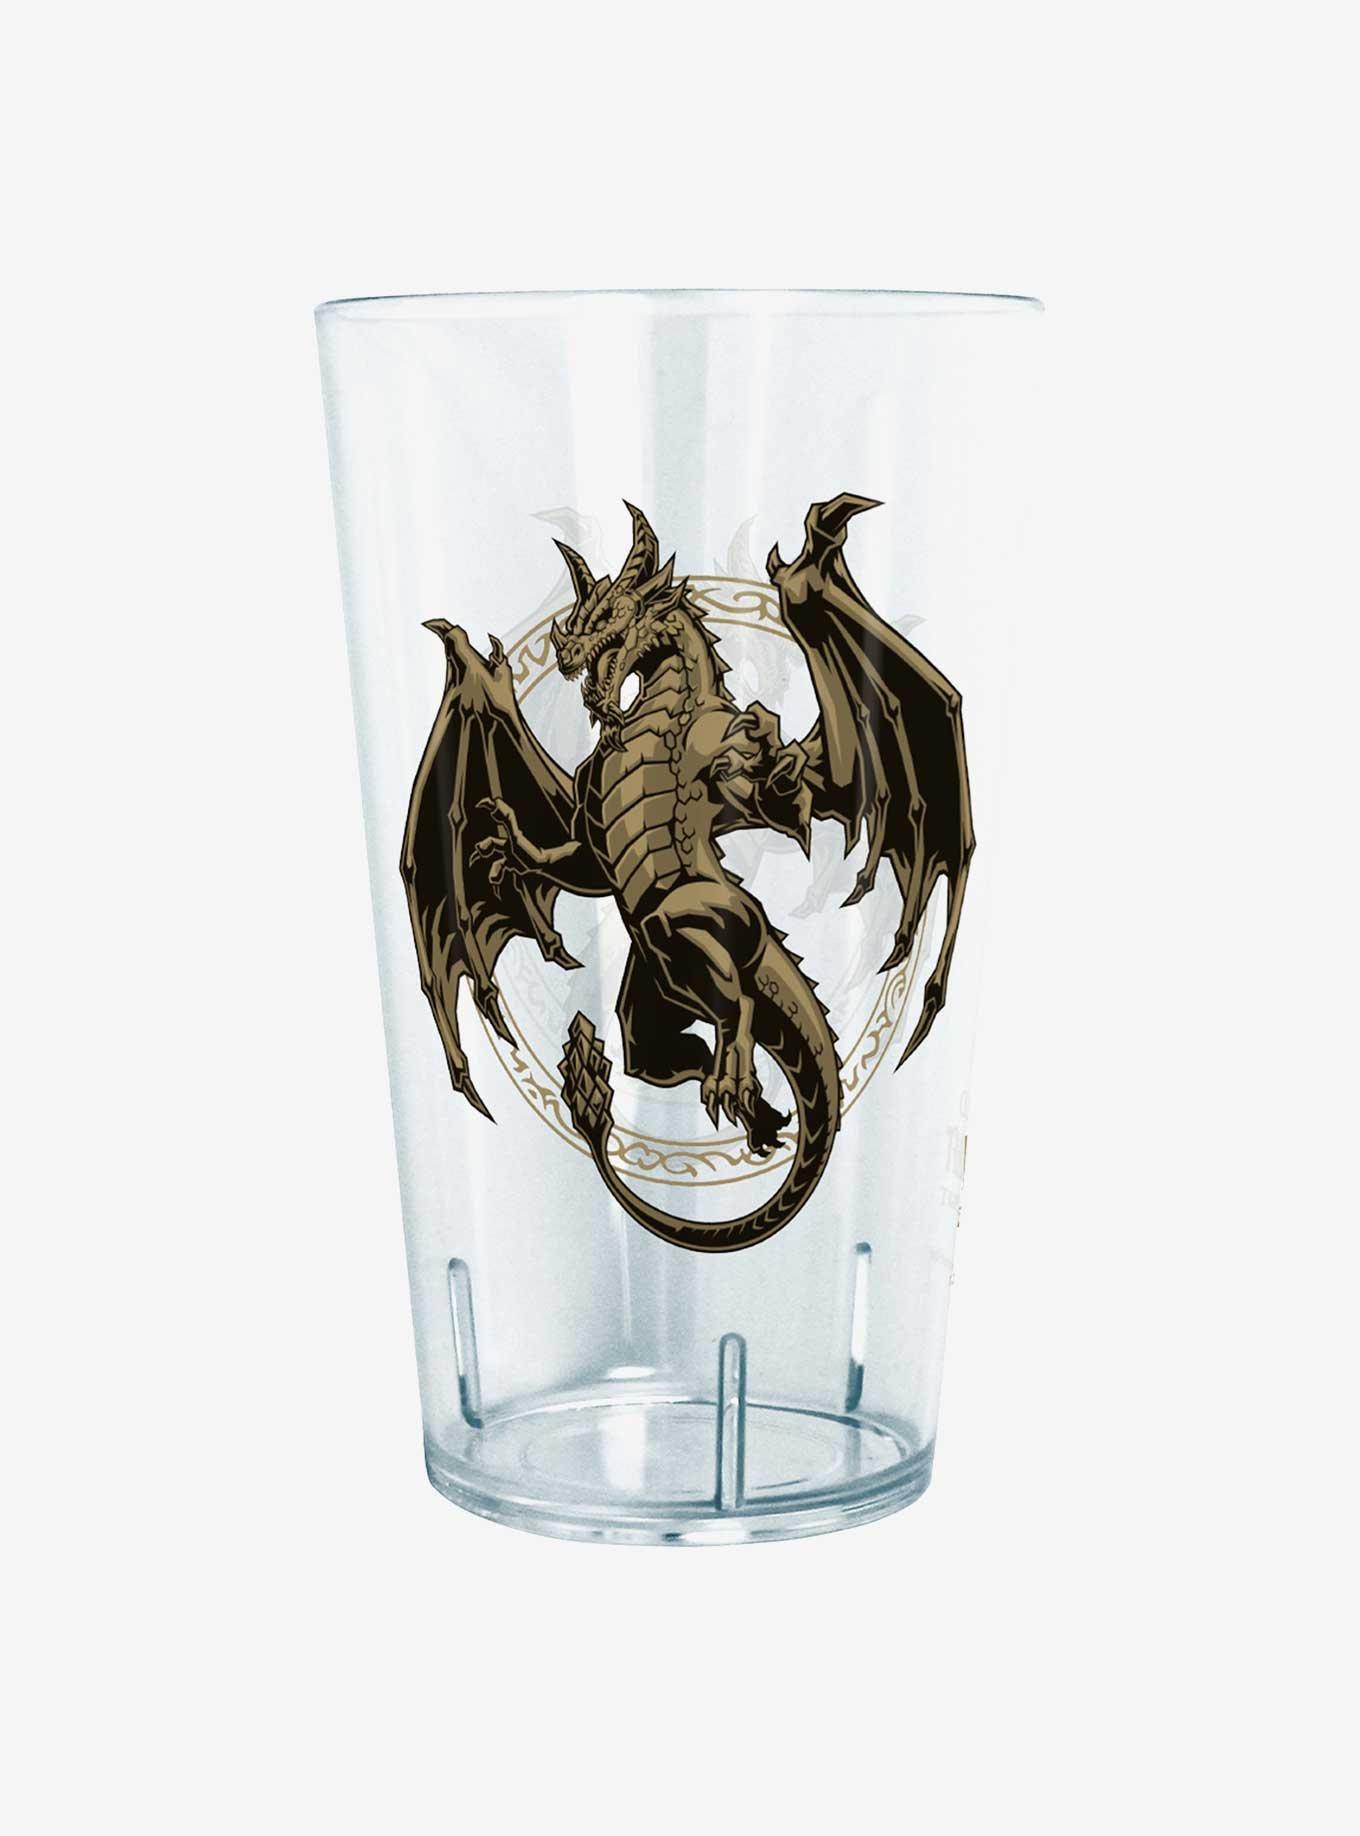 World of Warcraft Wrathion Dragon Tritan Cup